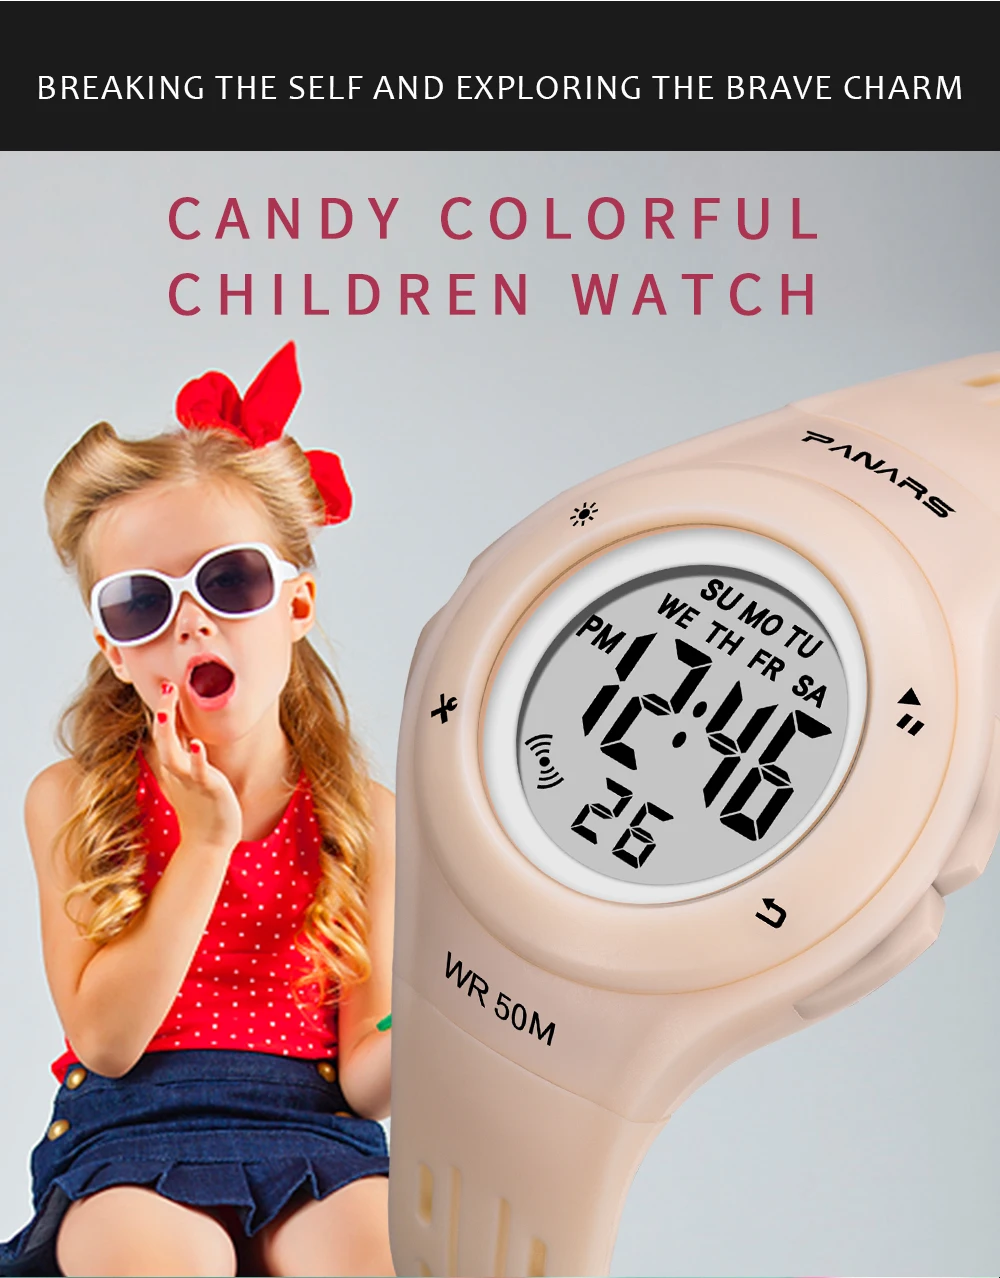 PANARS модные 7 светодиодный Цвета для присмотра за детьми, WR50M Водонепроницаемый детские наручные часы-будильник многофункциональные часы